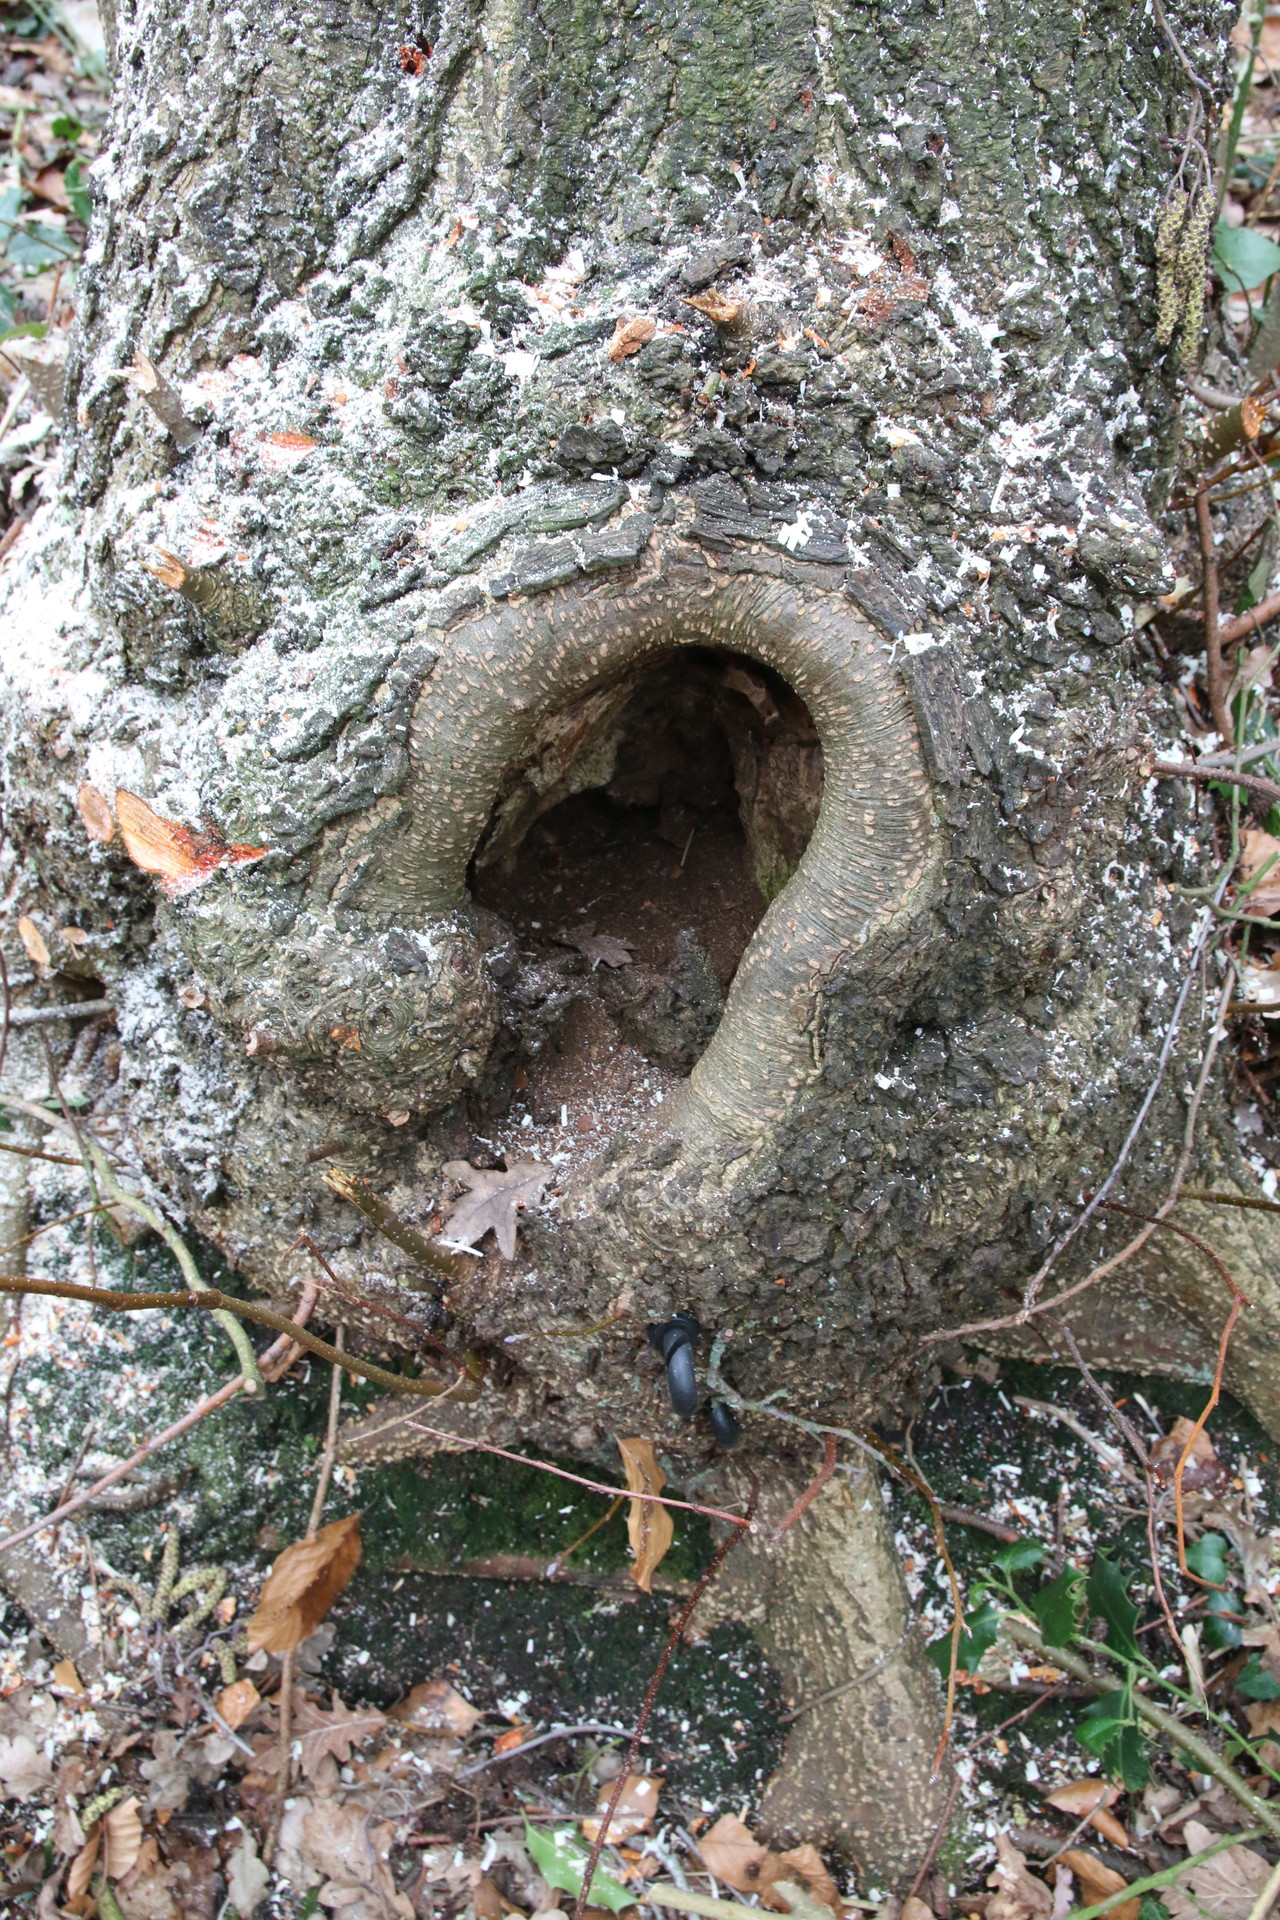 Holle bomen hoeven niet gevaarlijk te zijn, mits de restwand intact is. De binnenkant van de boom draagt heel weinig bij aan de sterkte. Een lantarenpaal is ook hol en deze valt alleen om bij een zware aanrijding.